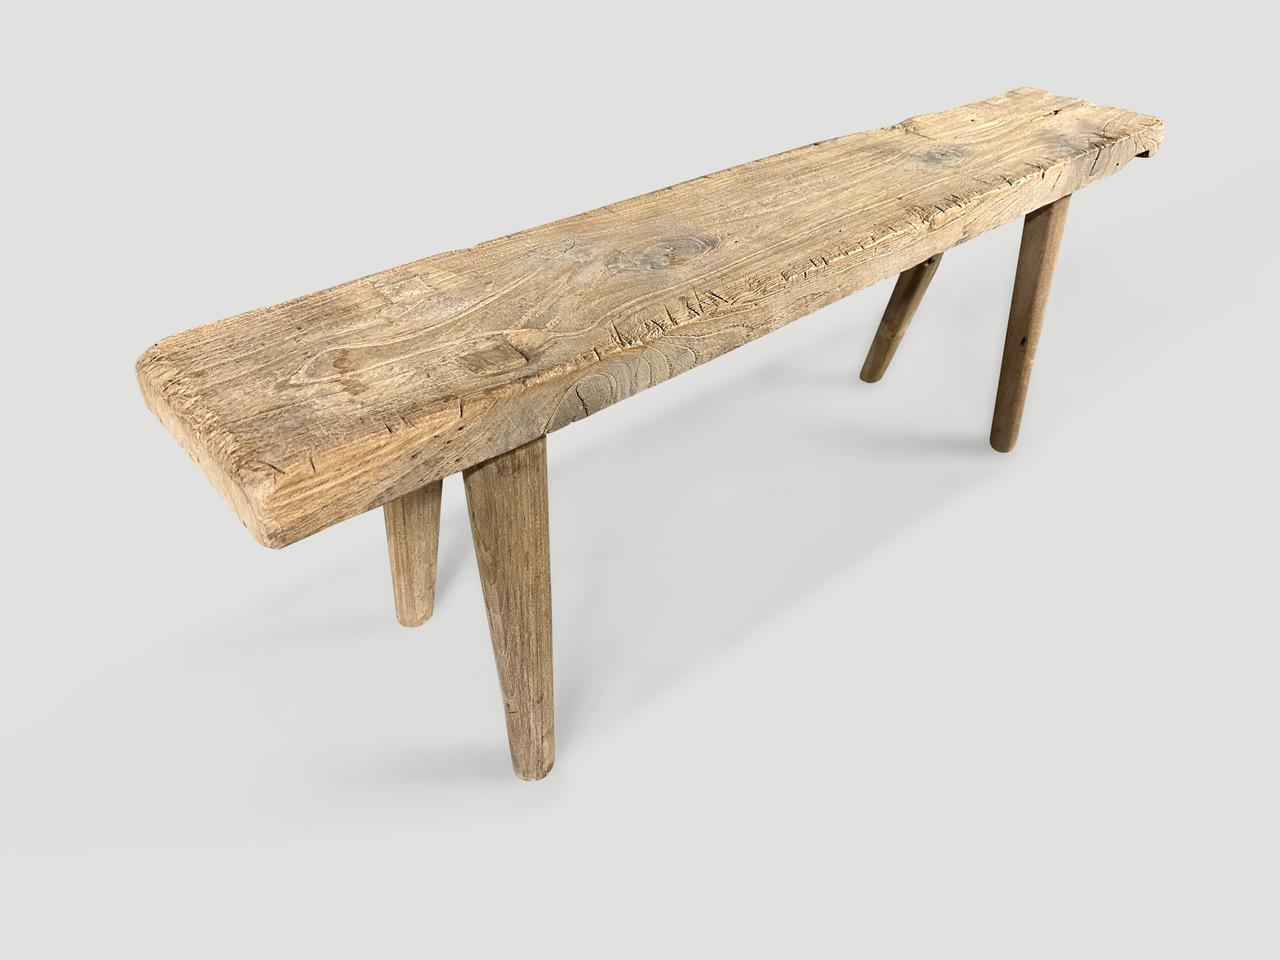 Eine einzelne dicke antike Holzplatte mit schönem Charakter. Wir haben glatte, minimalistische Teakholzbeine hinzugefügt, um diese schöne Bank herzustellen, und sie mit unserer geheimen Zutat veredelt, wodurch die einzigartige Holzmaserung zum